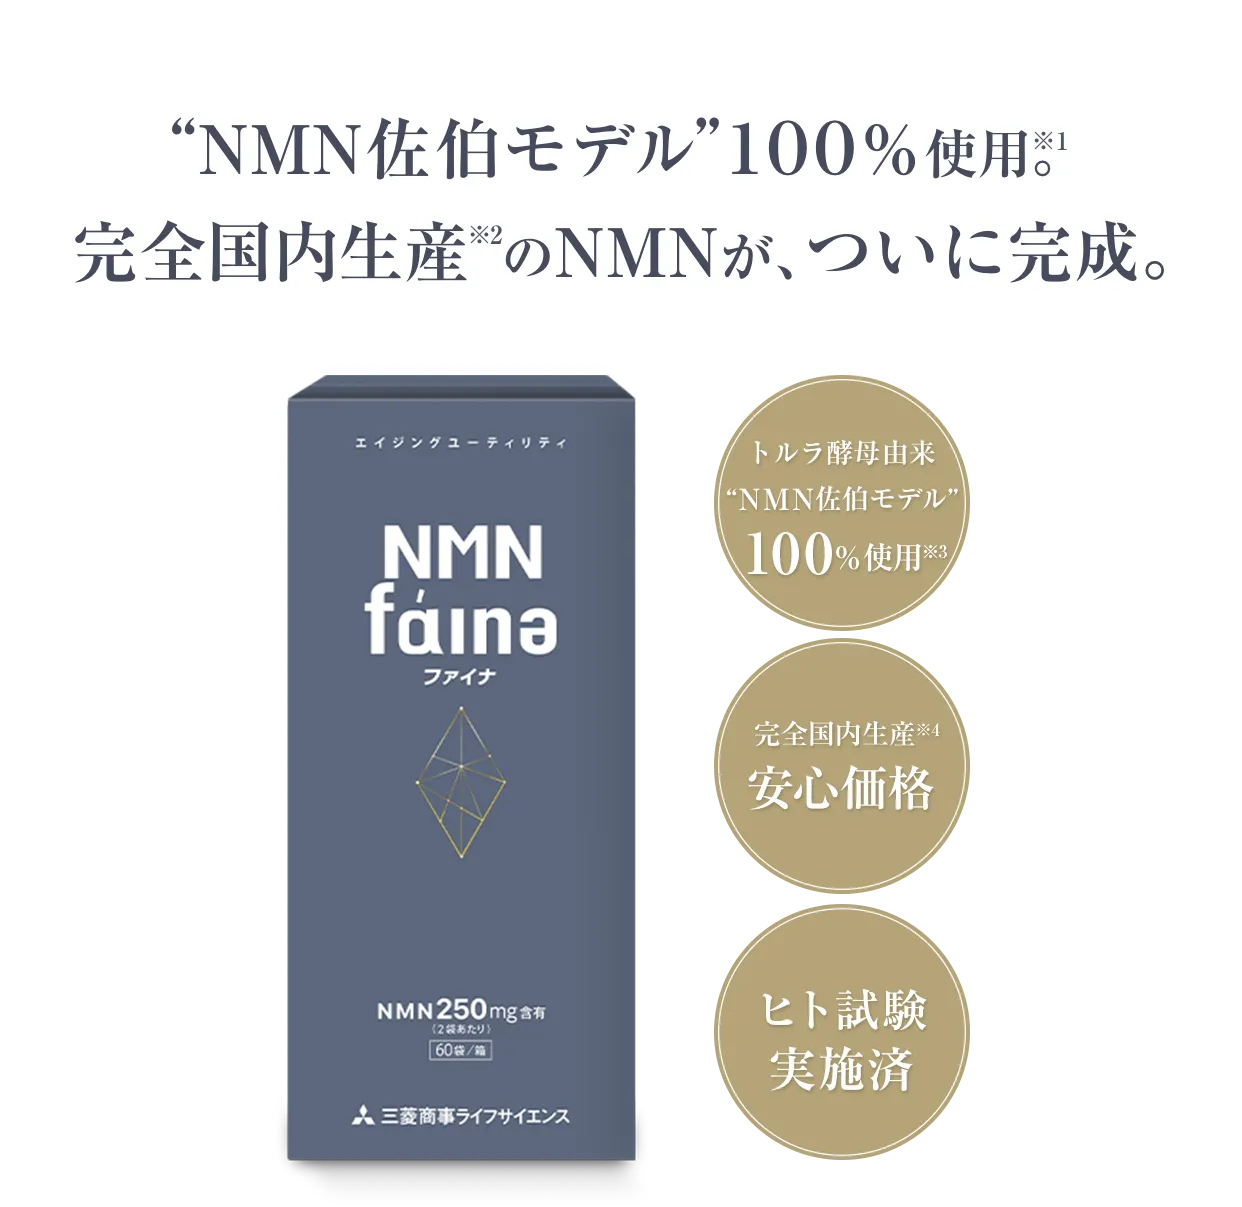 NMNファイナ製品情報｜三菱商事ライフサイエンス株式会社 オンライン